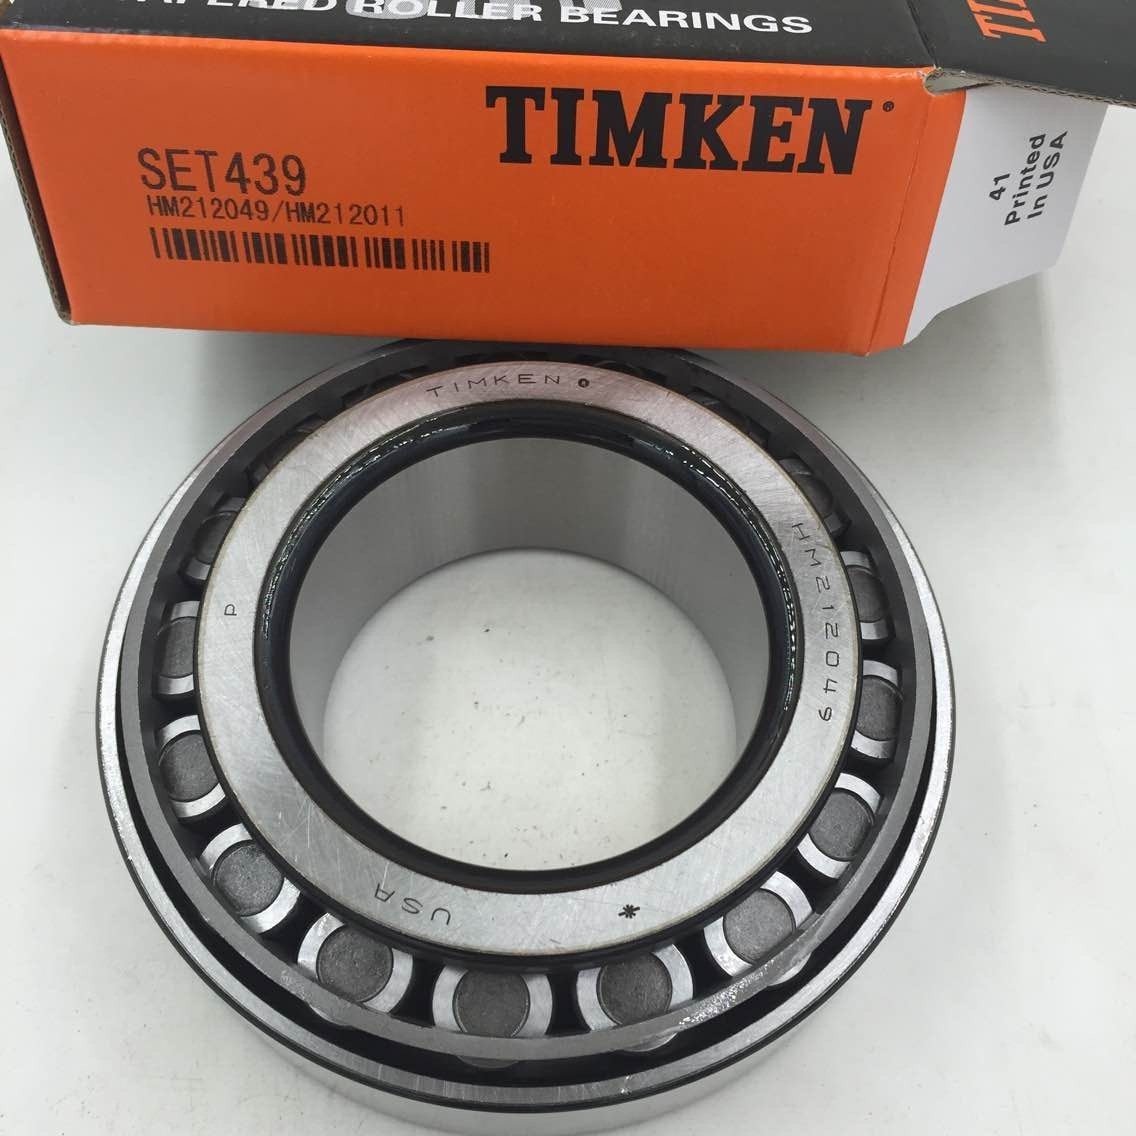 USA timken bearing SET439 663/653 Tapered Roller Bearings